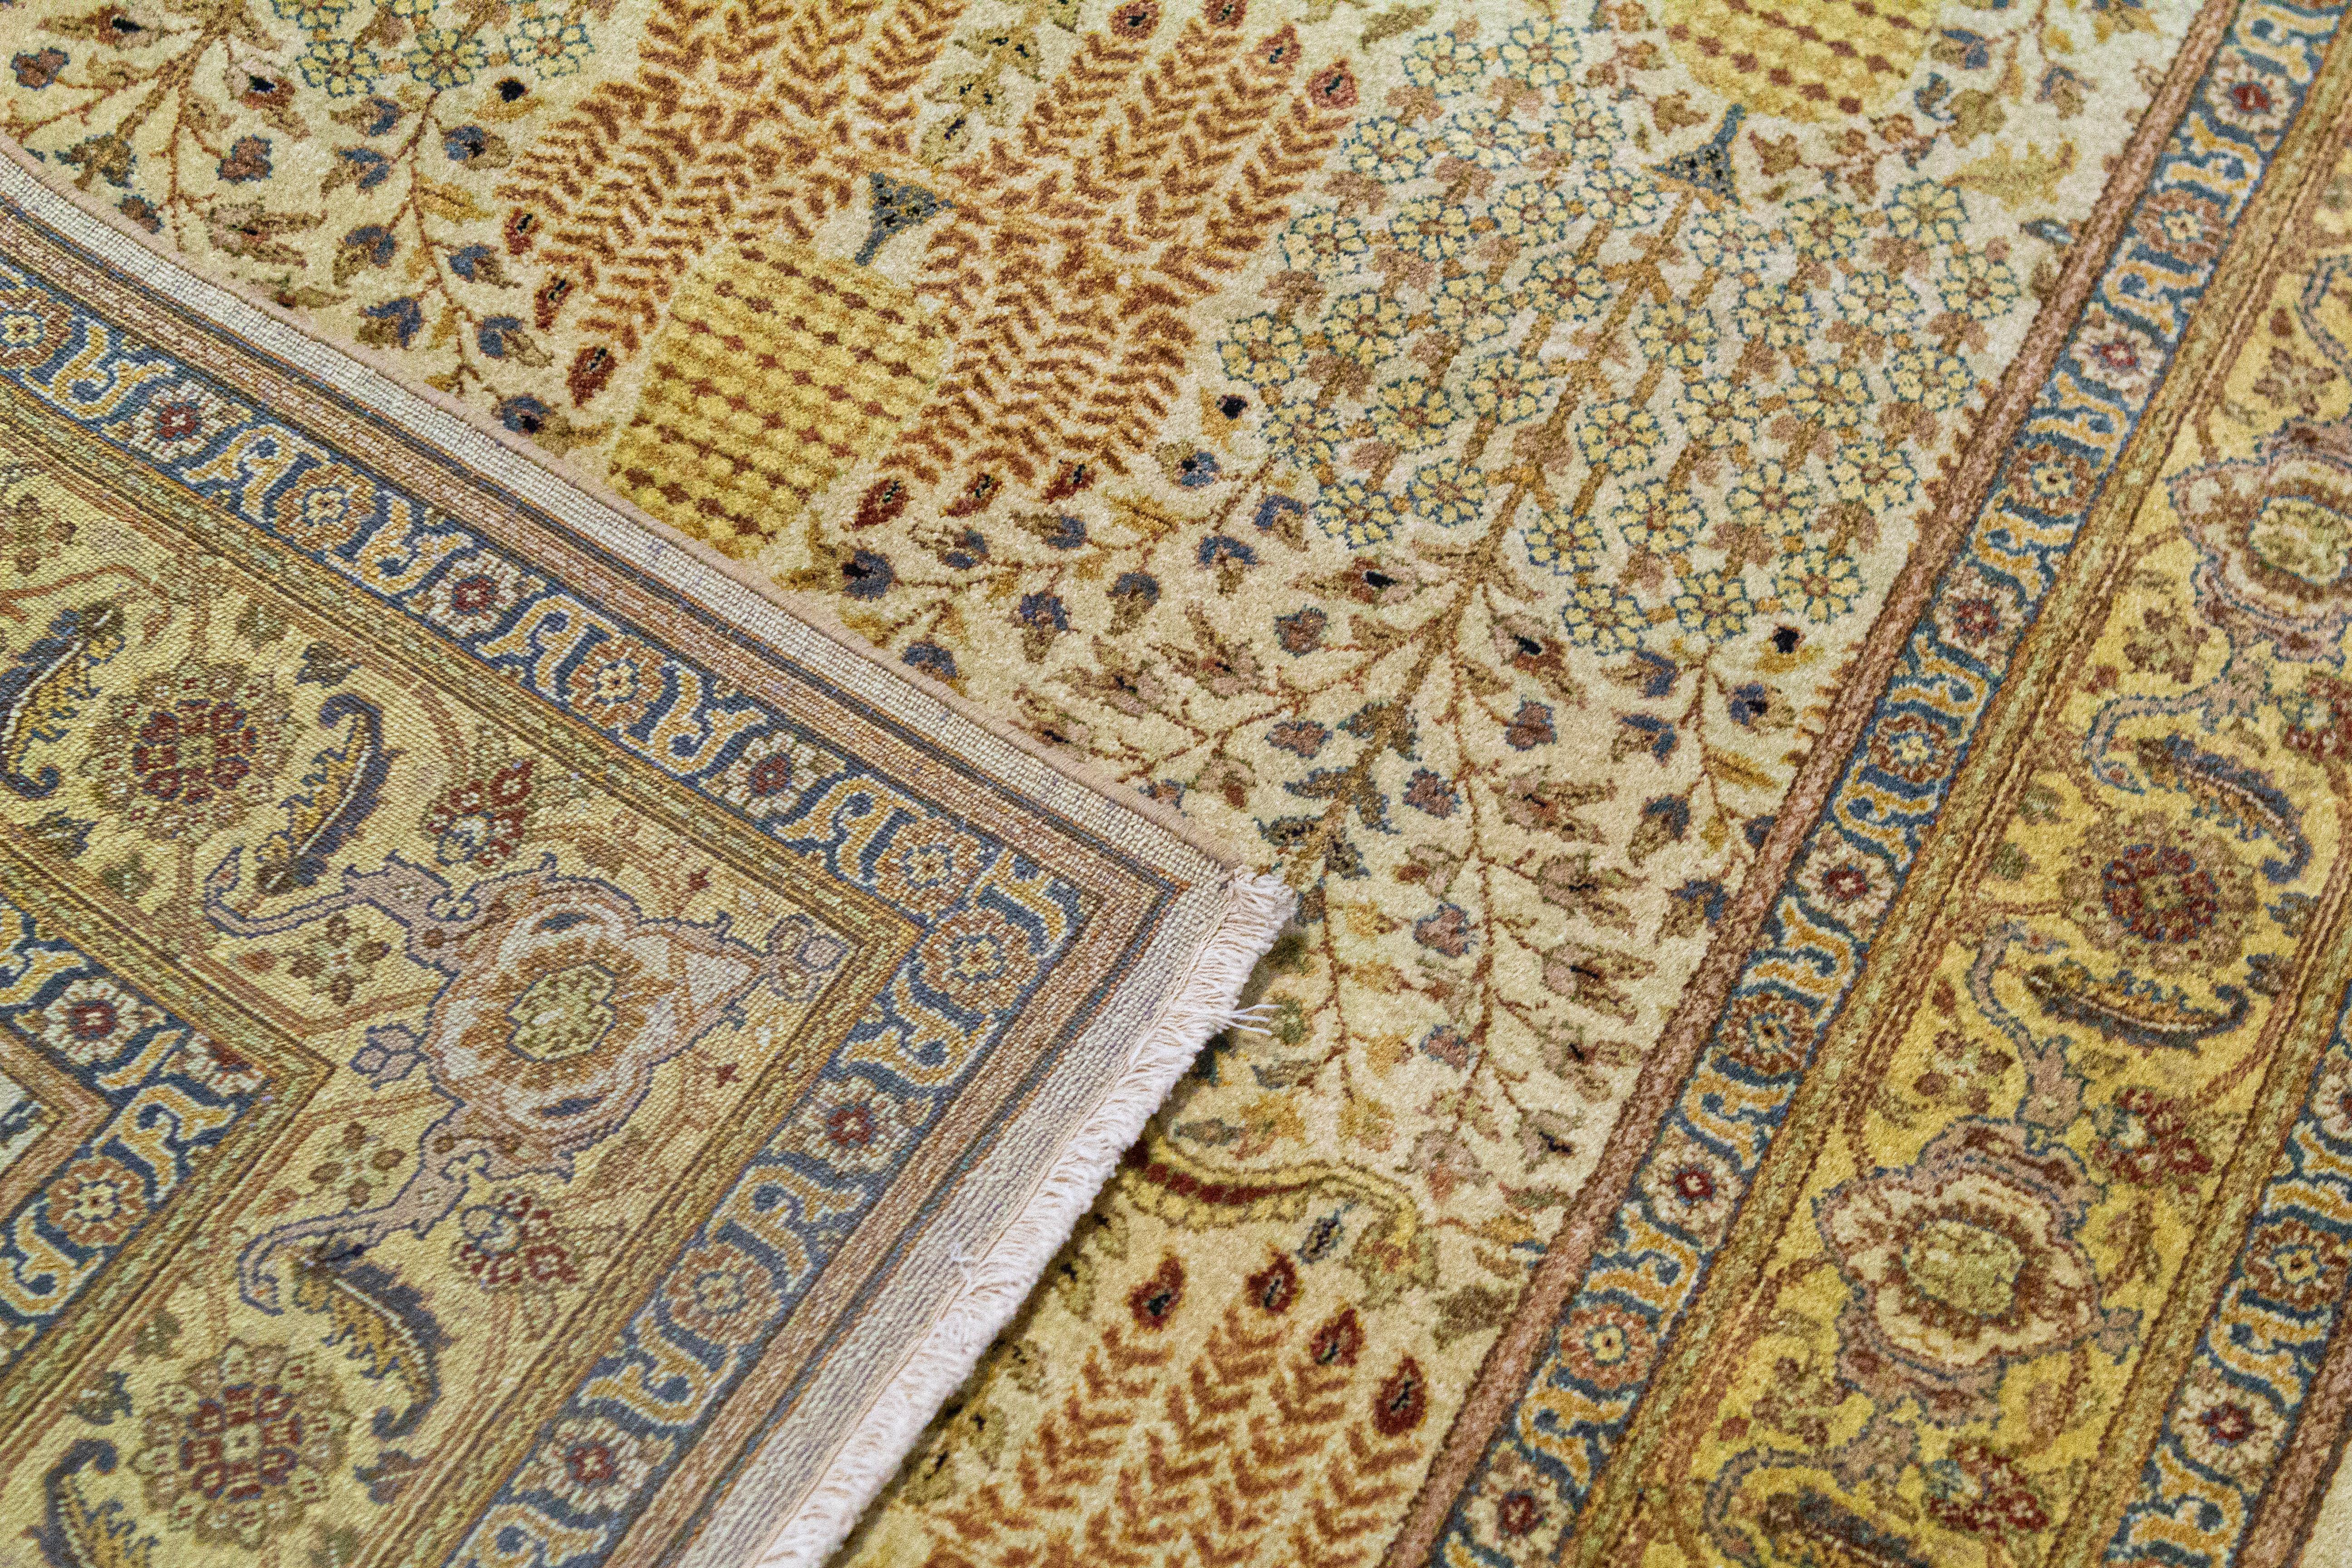 Recréations classiques des plus beaux motifs de Tabriz du XIXe siècle. Ces chefs-d'œuvre tissés à la main ont été minutieusement recréés en utilisant uniquement un mélange des meilleures laines indiennes et néo-zélandaises filées à la main et des